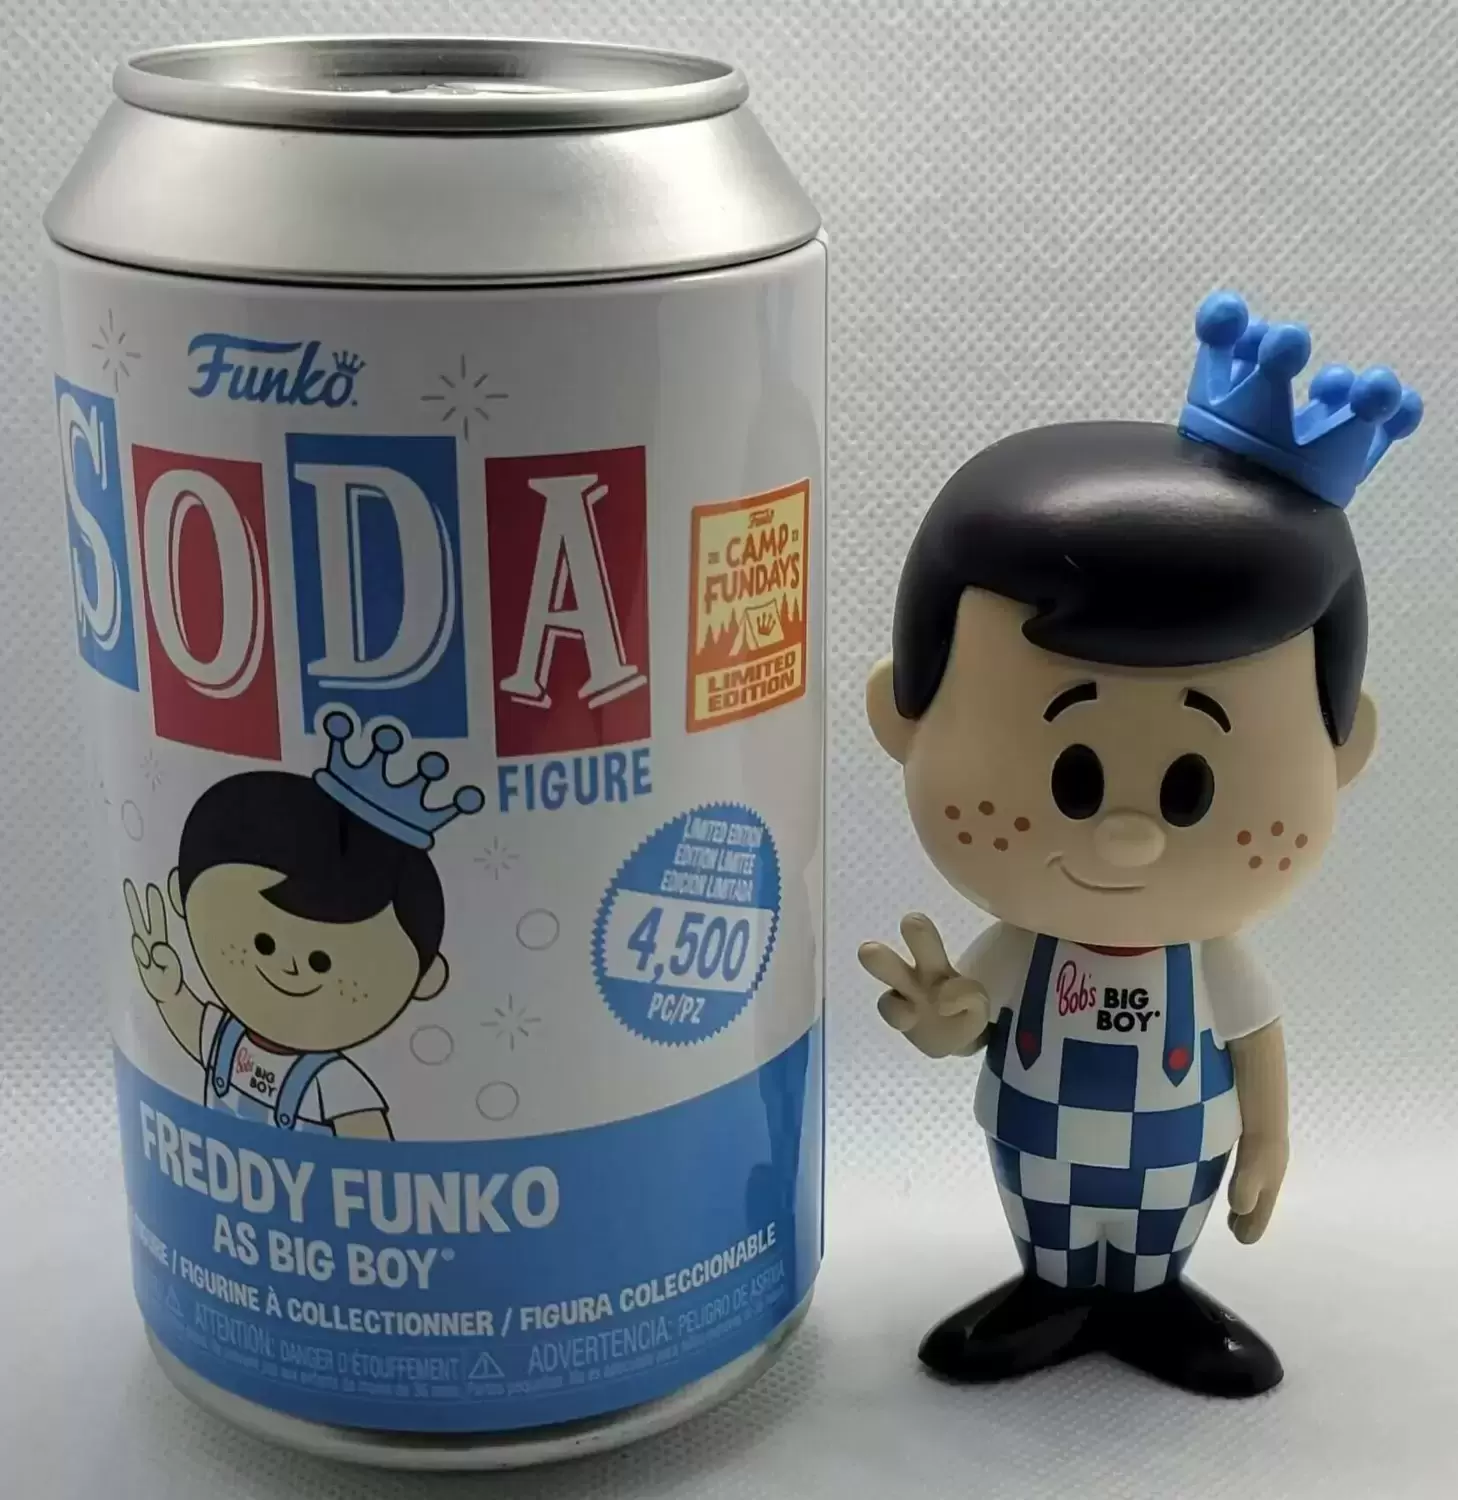 Vinyl Soda! - Funko - Freddy as Big Boy